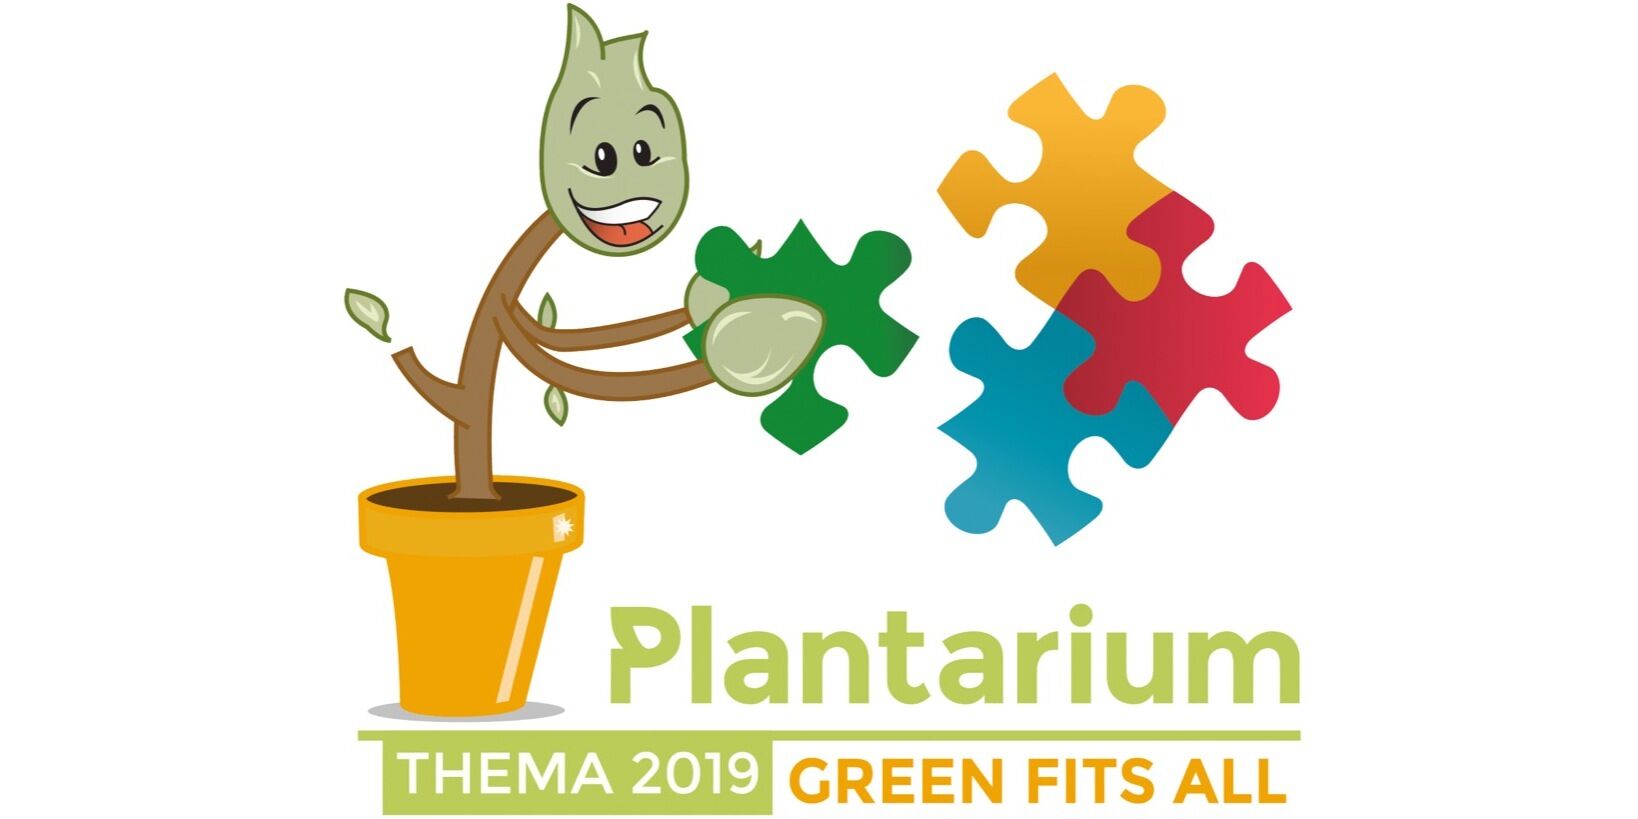 Plantarium 2019 – "Green Fits All"